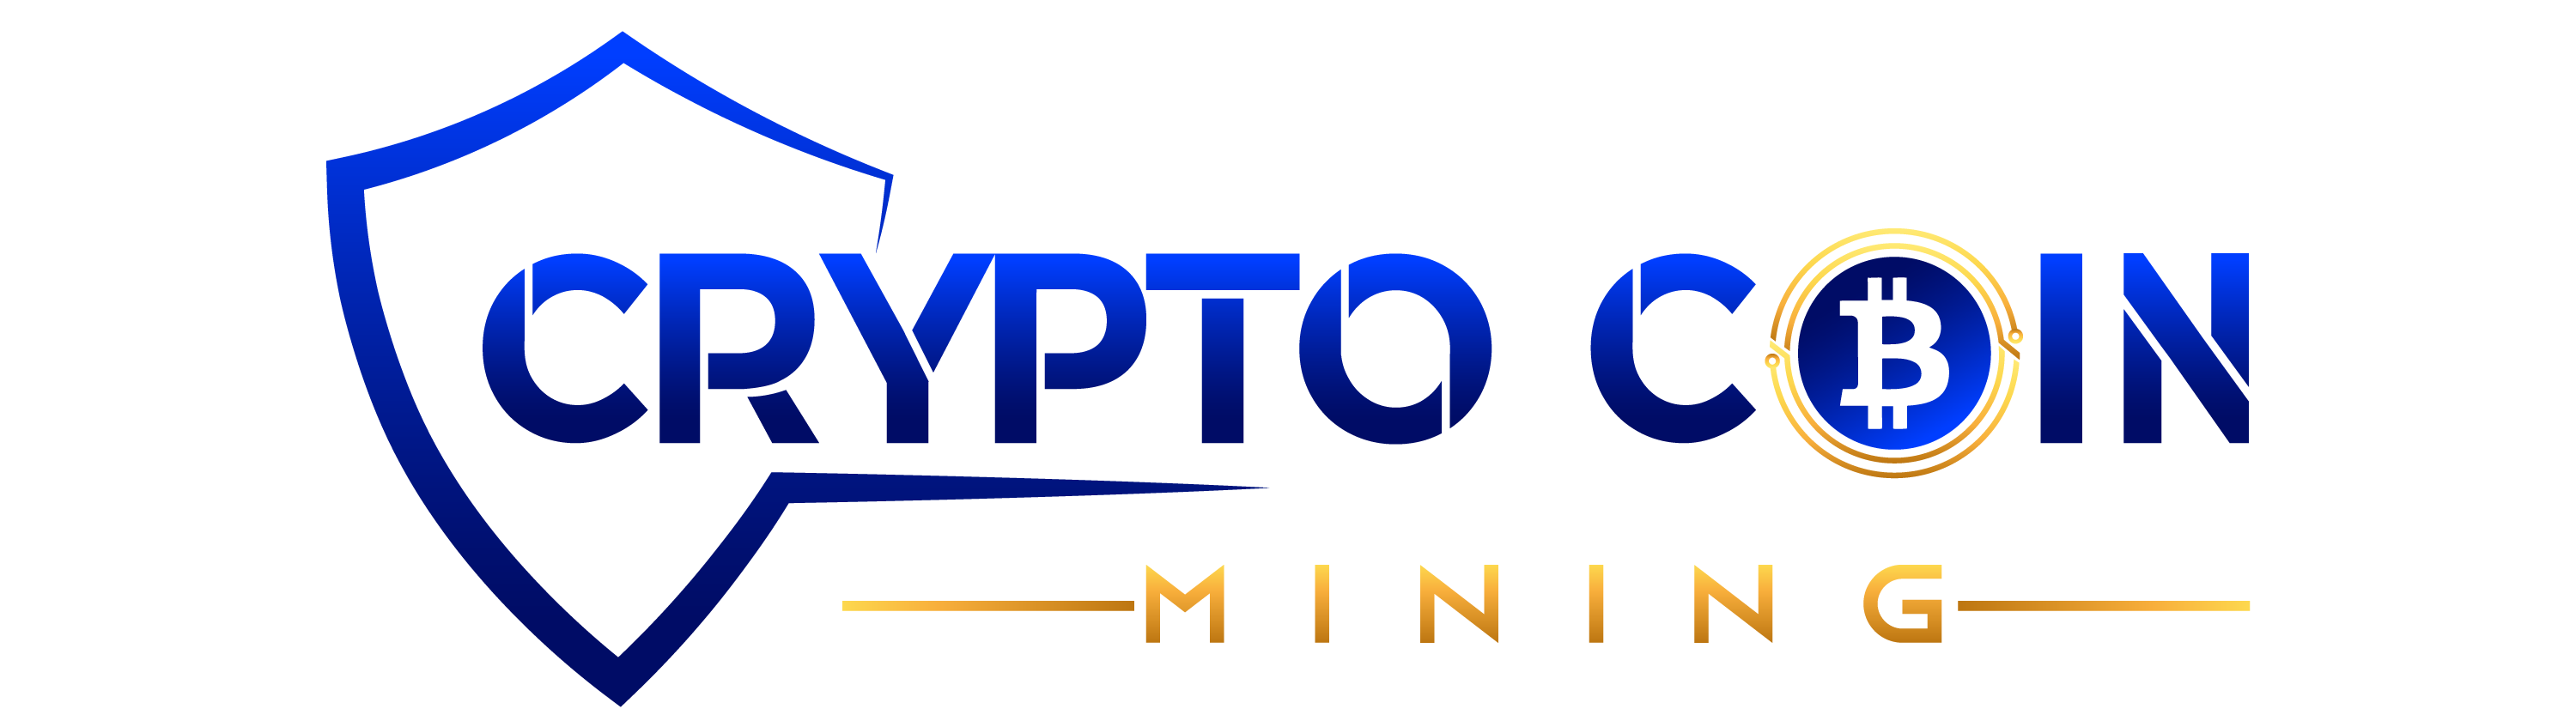 Crypto Coin Mining (Bitcoin Mining)